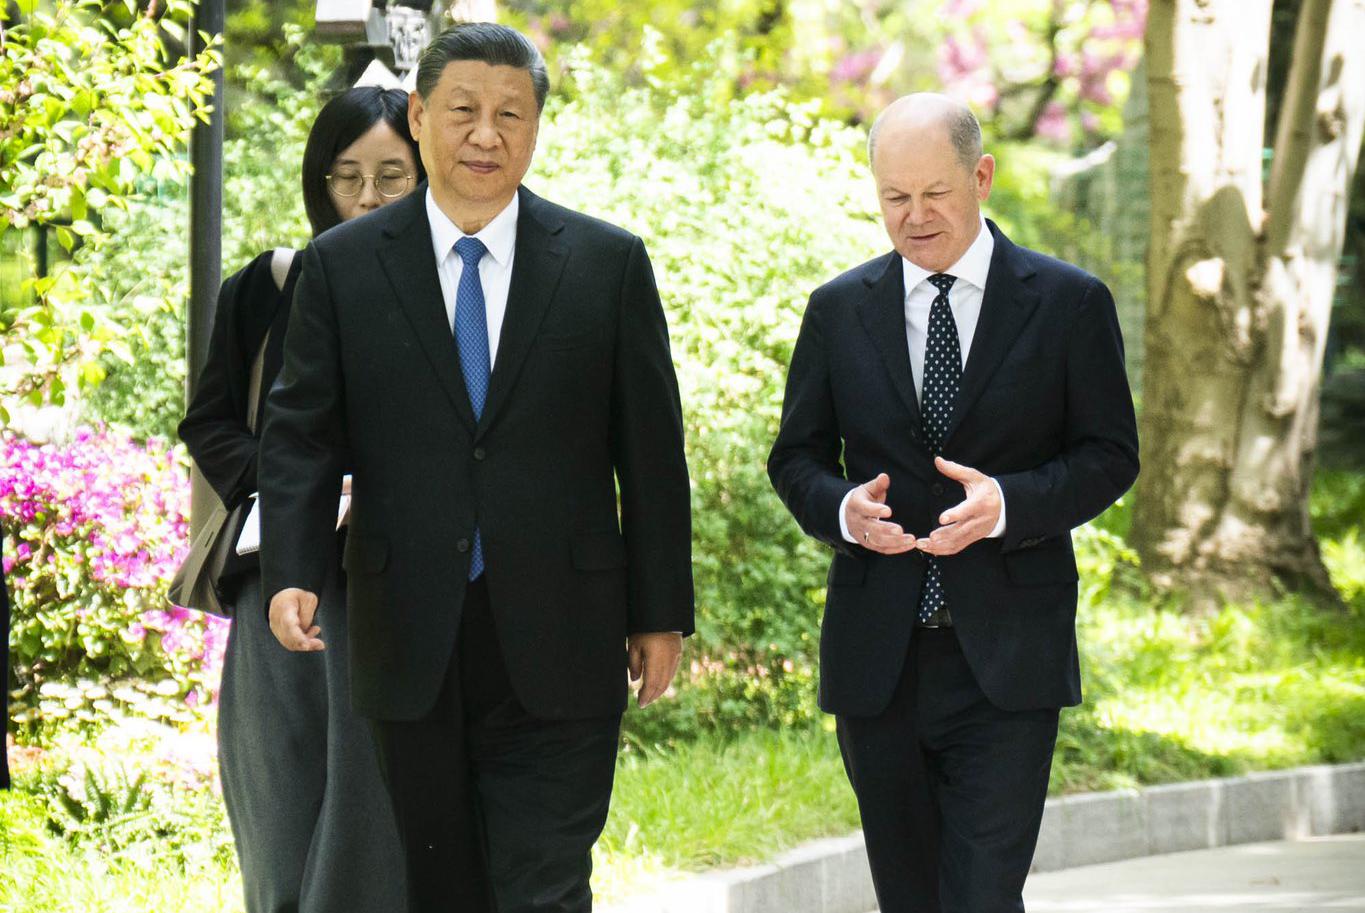 Канцлер Німеччини Олаф Шольц під час офіційного візиту до Пекіна обговорив з лідером КНР Сі Цзіньпіном російську агресію проти України. За словами канцлера, він попросив китайського лідера вплинути на путіна задля припинення вогню